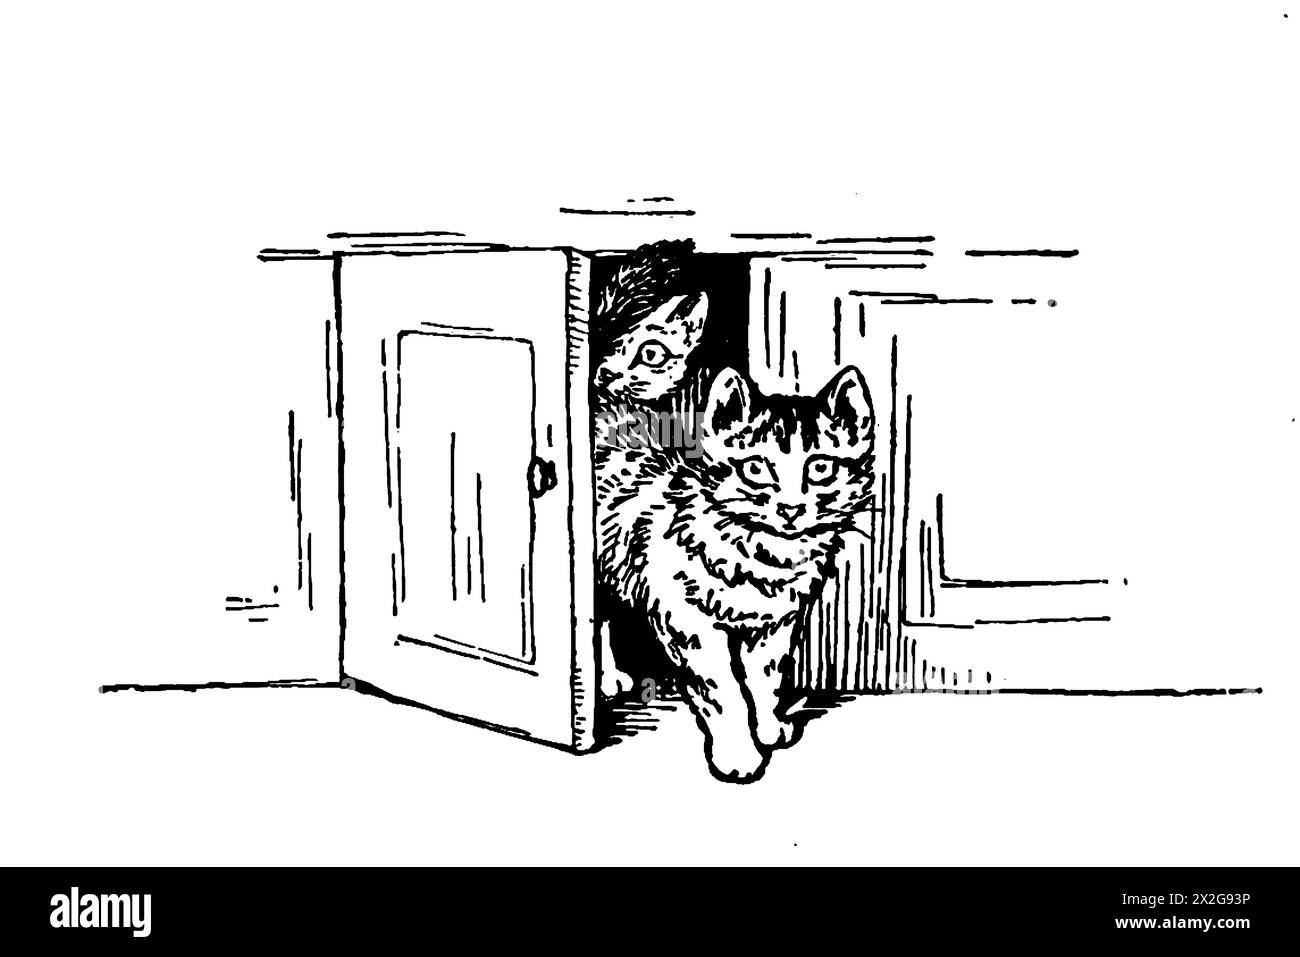 Schwarz-weiße Umrissskizze einer Katze, die hinter einer Tür herausblickt Stockfoto